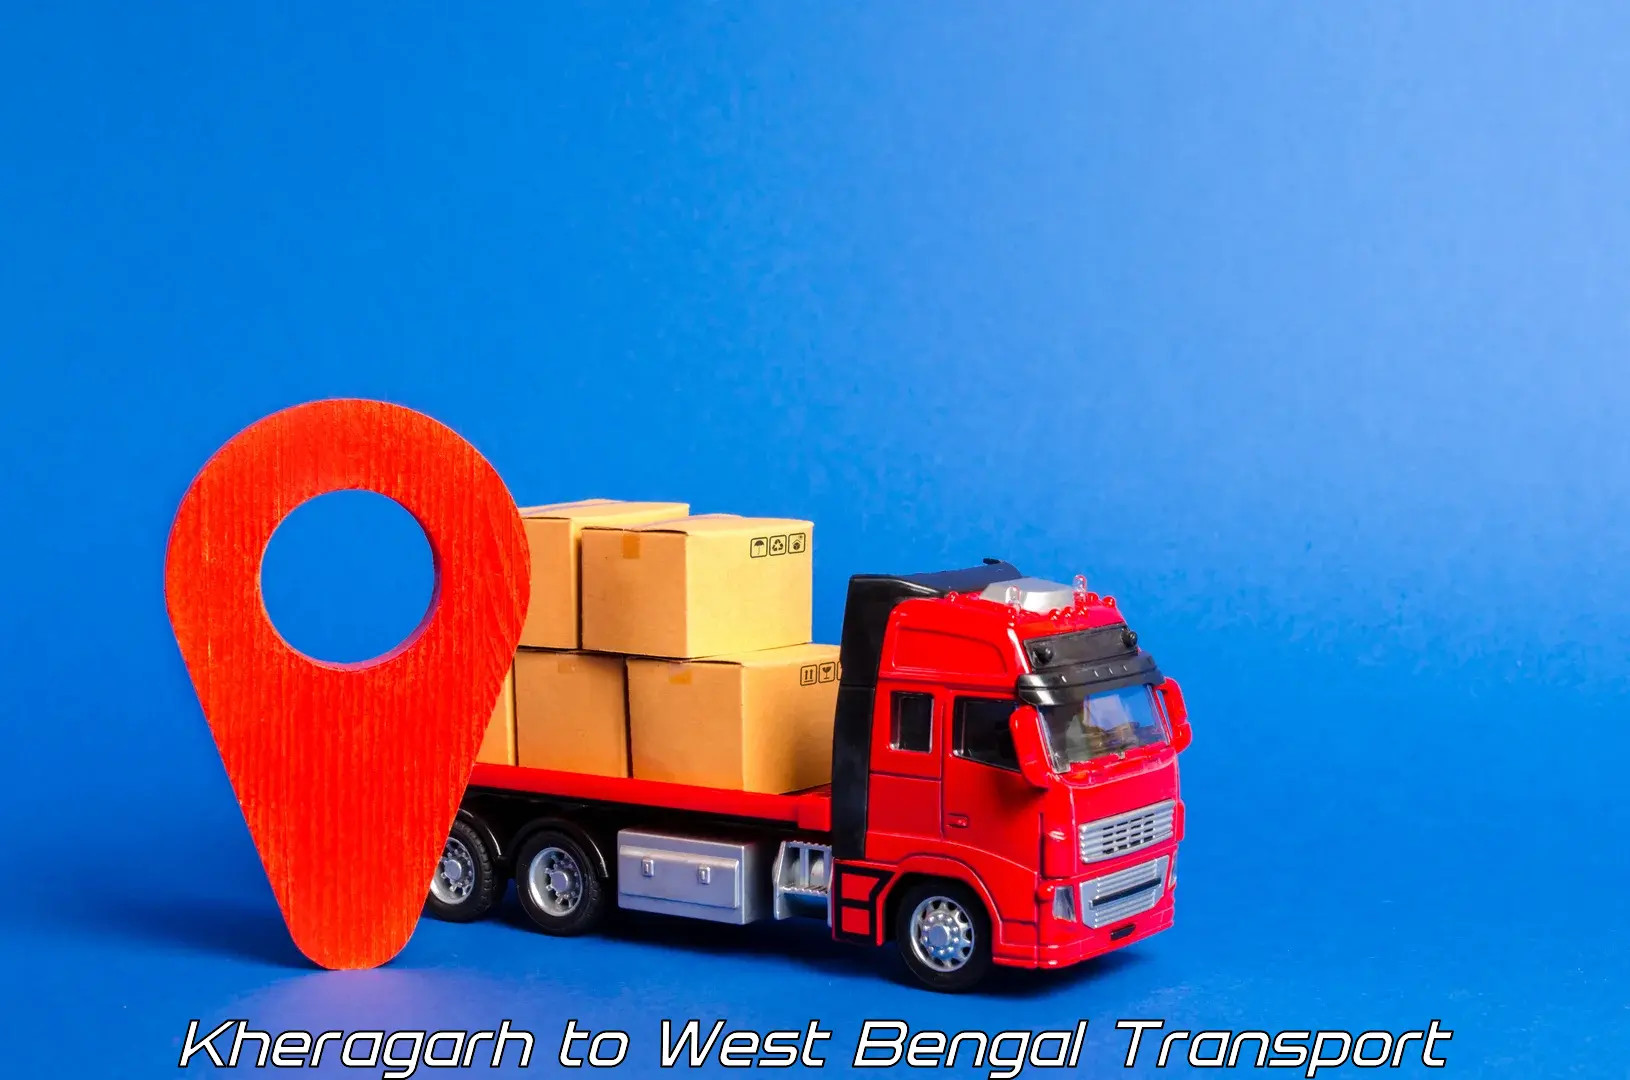 Two wheeler transport services Kheragarh to Maynaguri